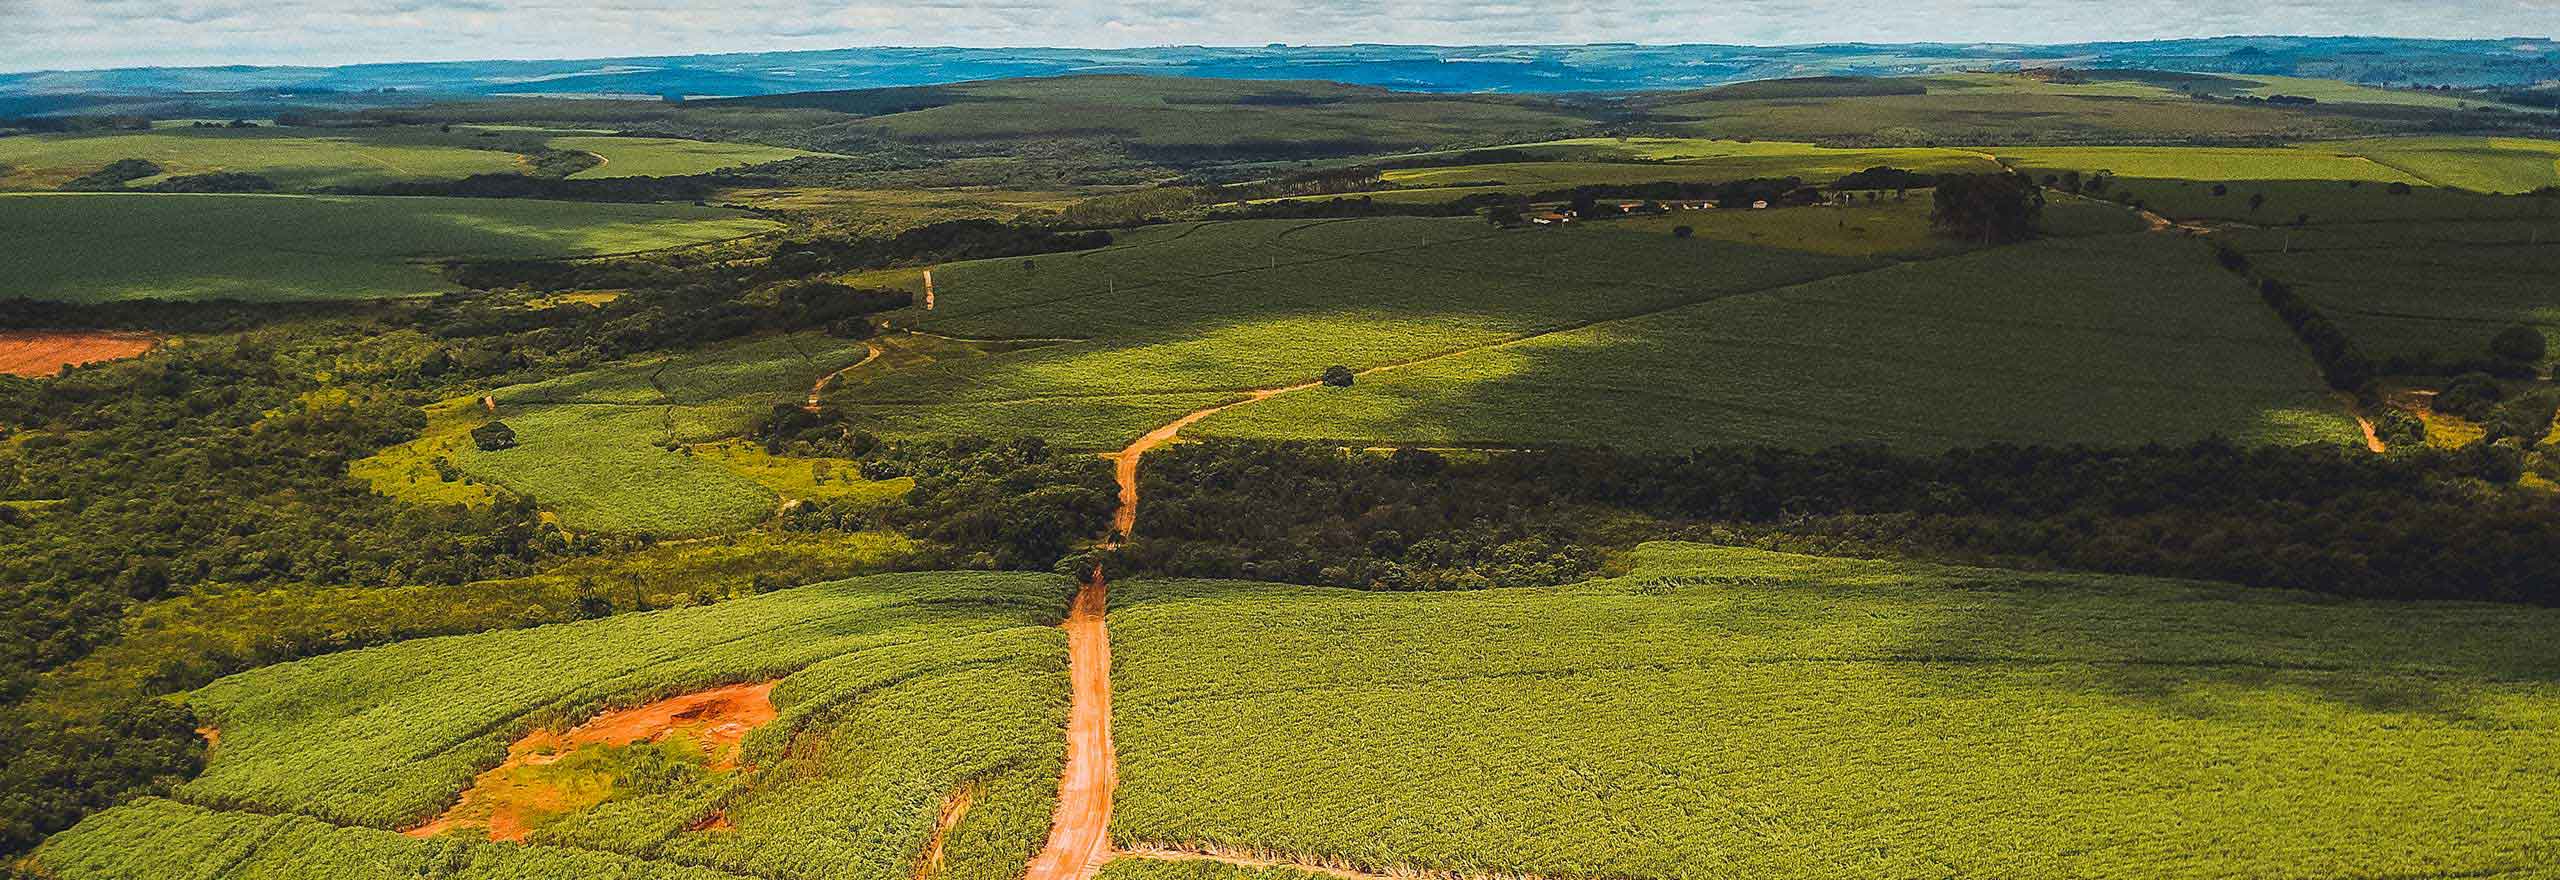 imagem aérea de um campo verdejante de cana-de-açúcar